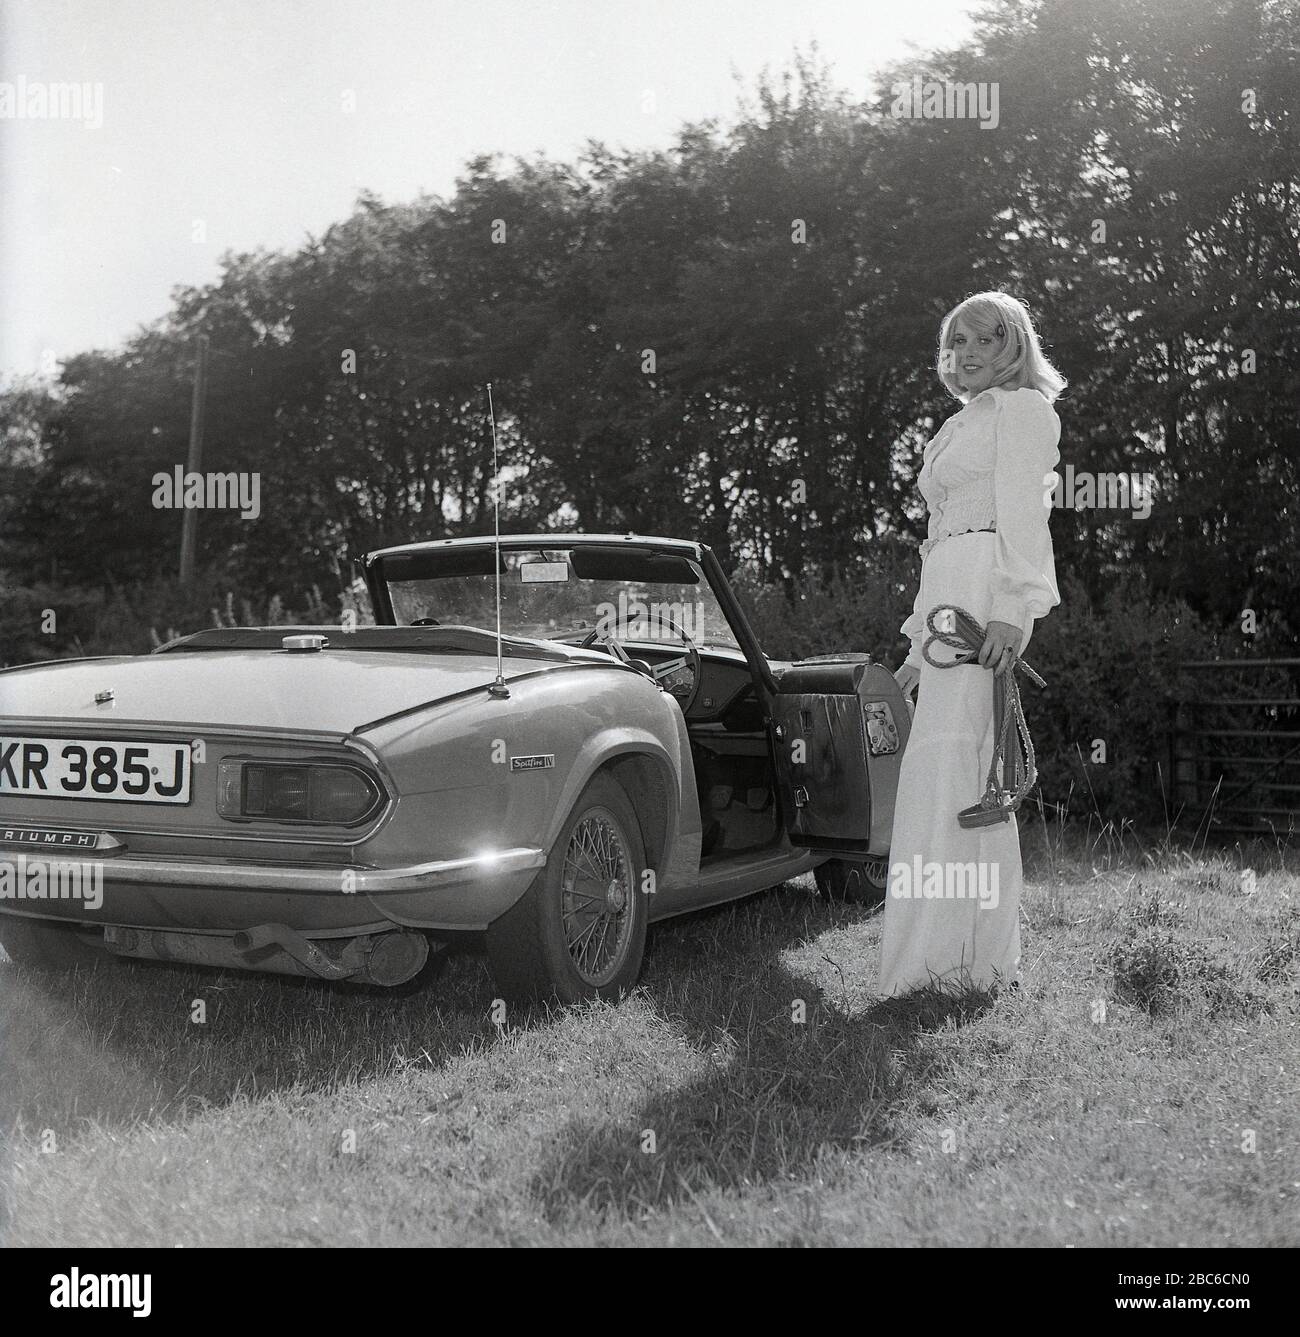 1970er Jahre, historisch, draußen auf einem sonnenbeleuchteten Feld, eine attraktive blonde Frau in einer weißen Oberteil- und glockenuntergebrachten Hose, neben ihrem offenen Sportwagen, einem Triumph Spitfire IV, mit Drahträdern, England, Großbritannien stehend. Der 1962 erstmals vorgestellte Spitfire, der auf einem Entwurf von Giovanni Michelotti basierte, war ein kleiner britischer Zweisitzer-Sportwagen und wurde bis 1980 hergestellt. Das hier abgebildete Mark IV-Modell wurde in den Jahren 1970 bis 1974 bei Standard-Triumph Works (im Besitz von Leyland Motors) in Canley, Coventry hergestellt und neben anderen neuen Merkmalen aus früheren Modellen war ein neu gestaltetes Heckende Stockfoto